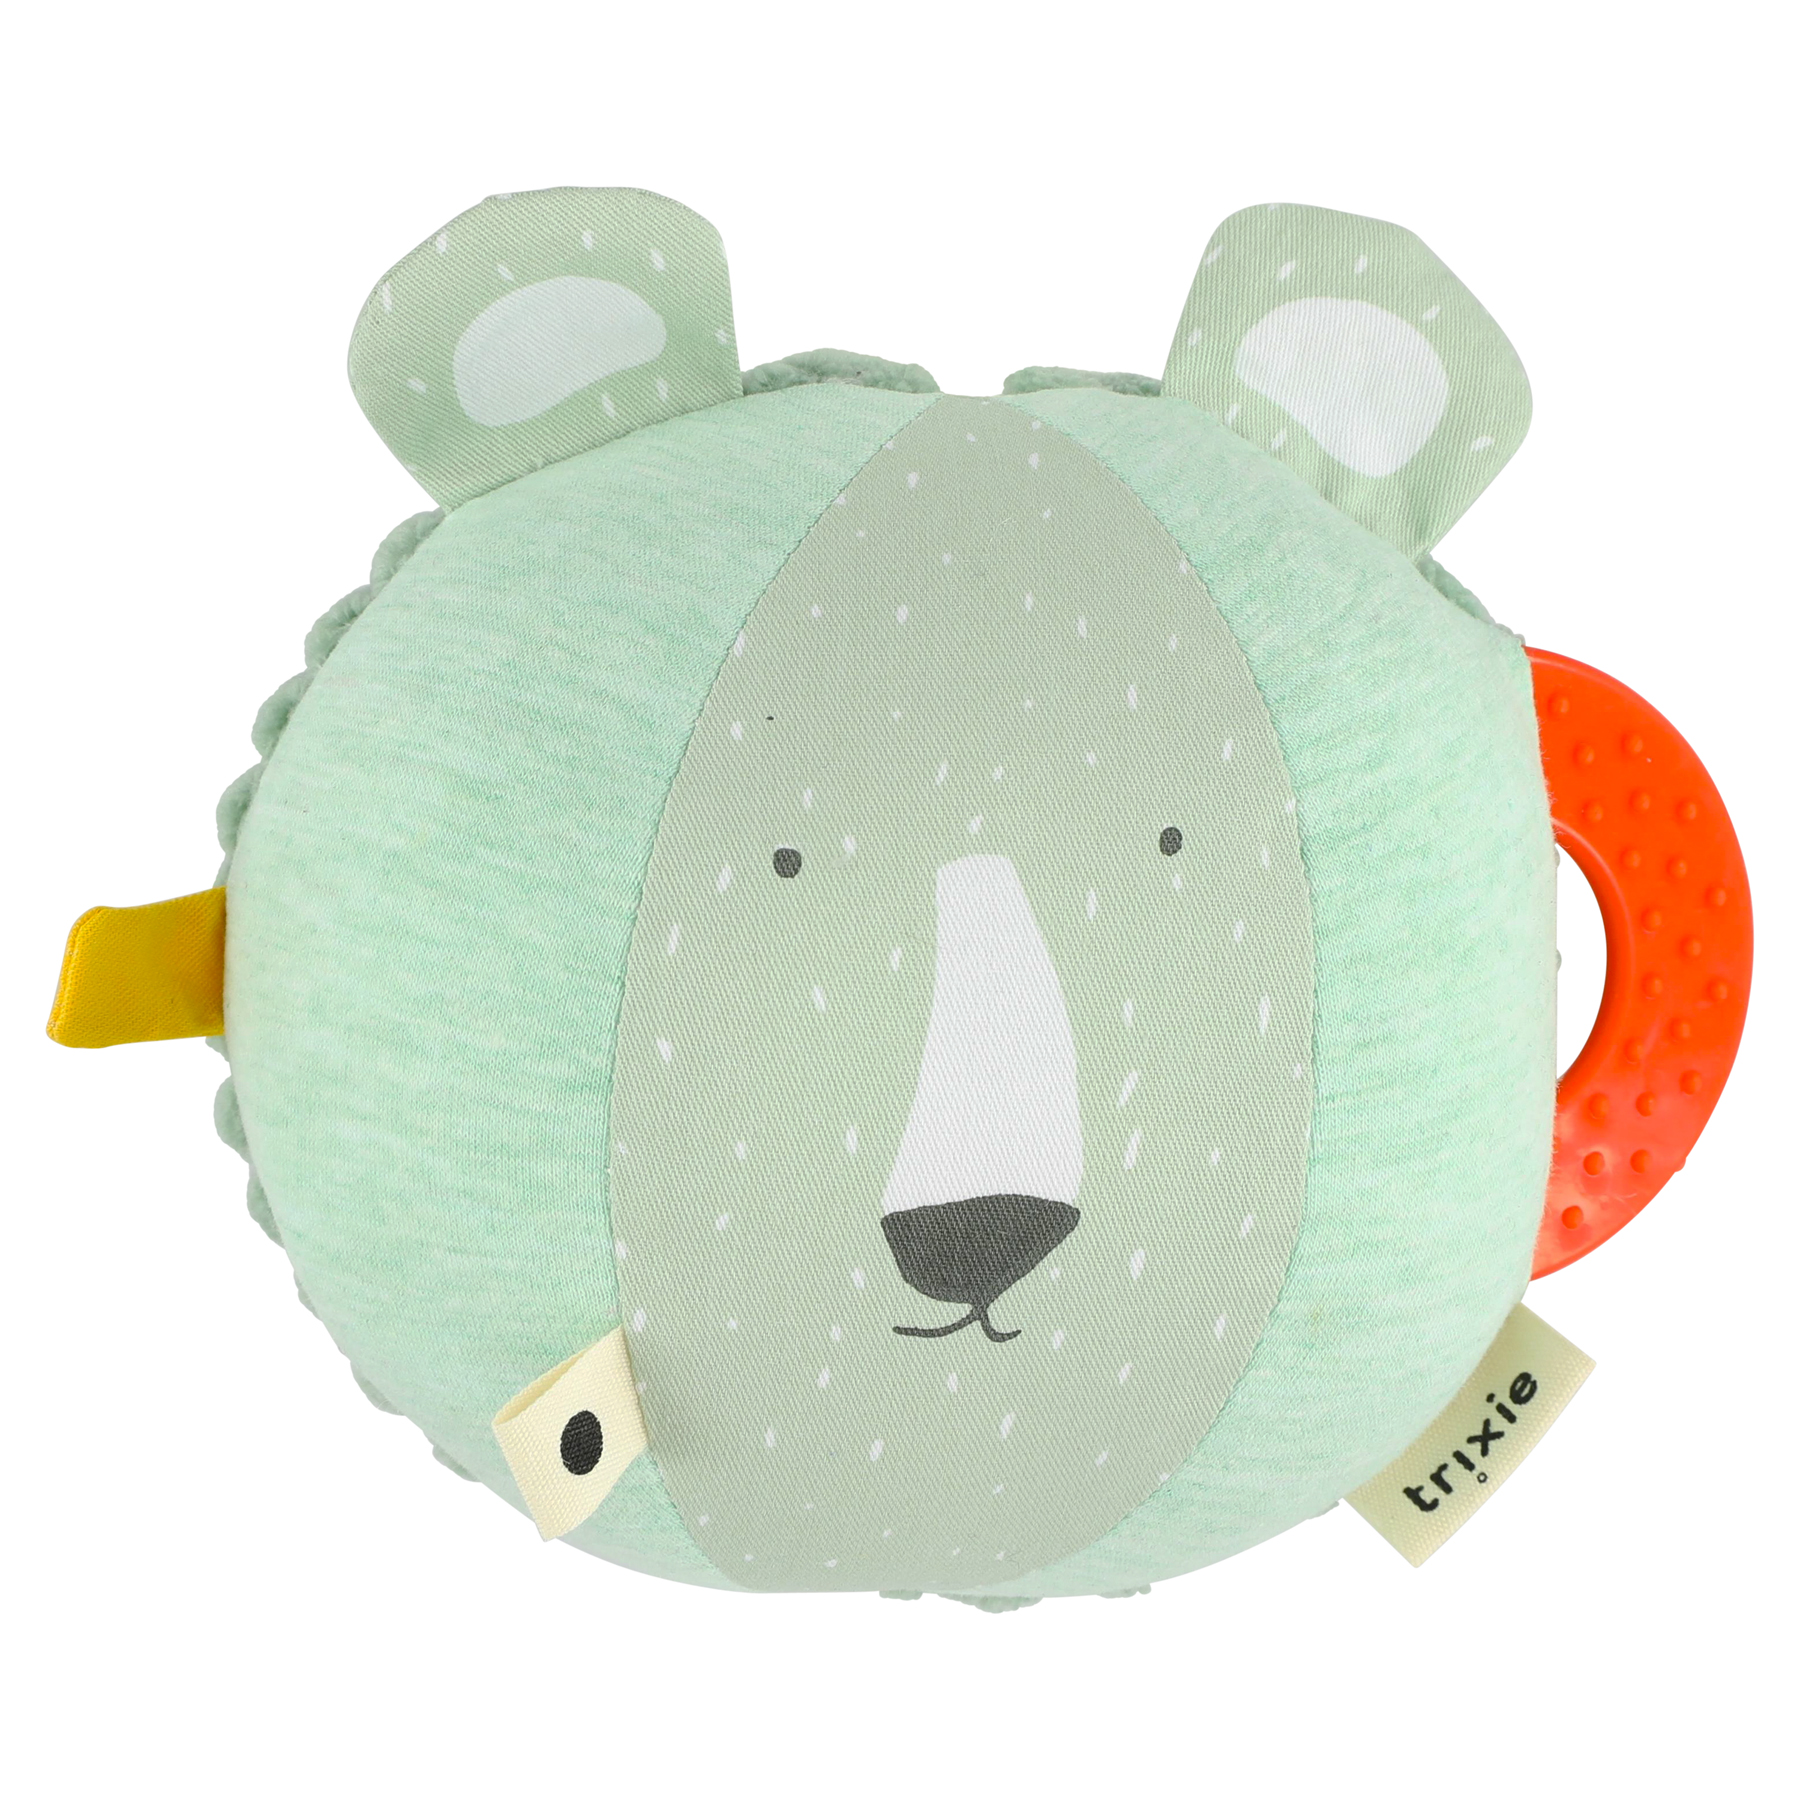 Trixie Mr Polar Bear Activity Ball Toy for Babies